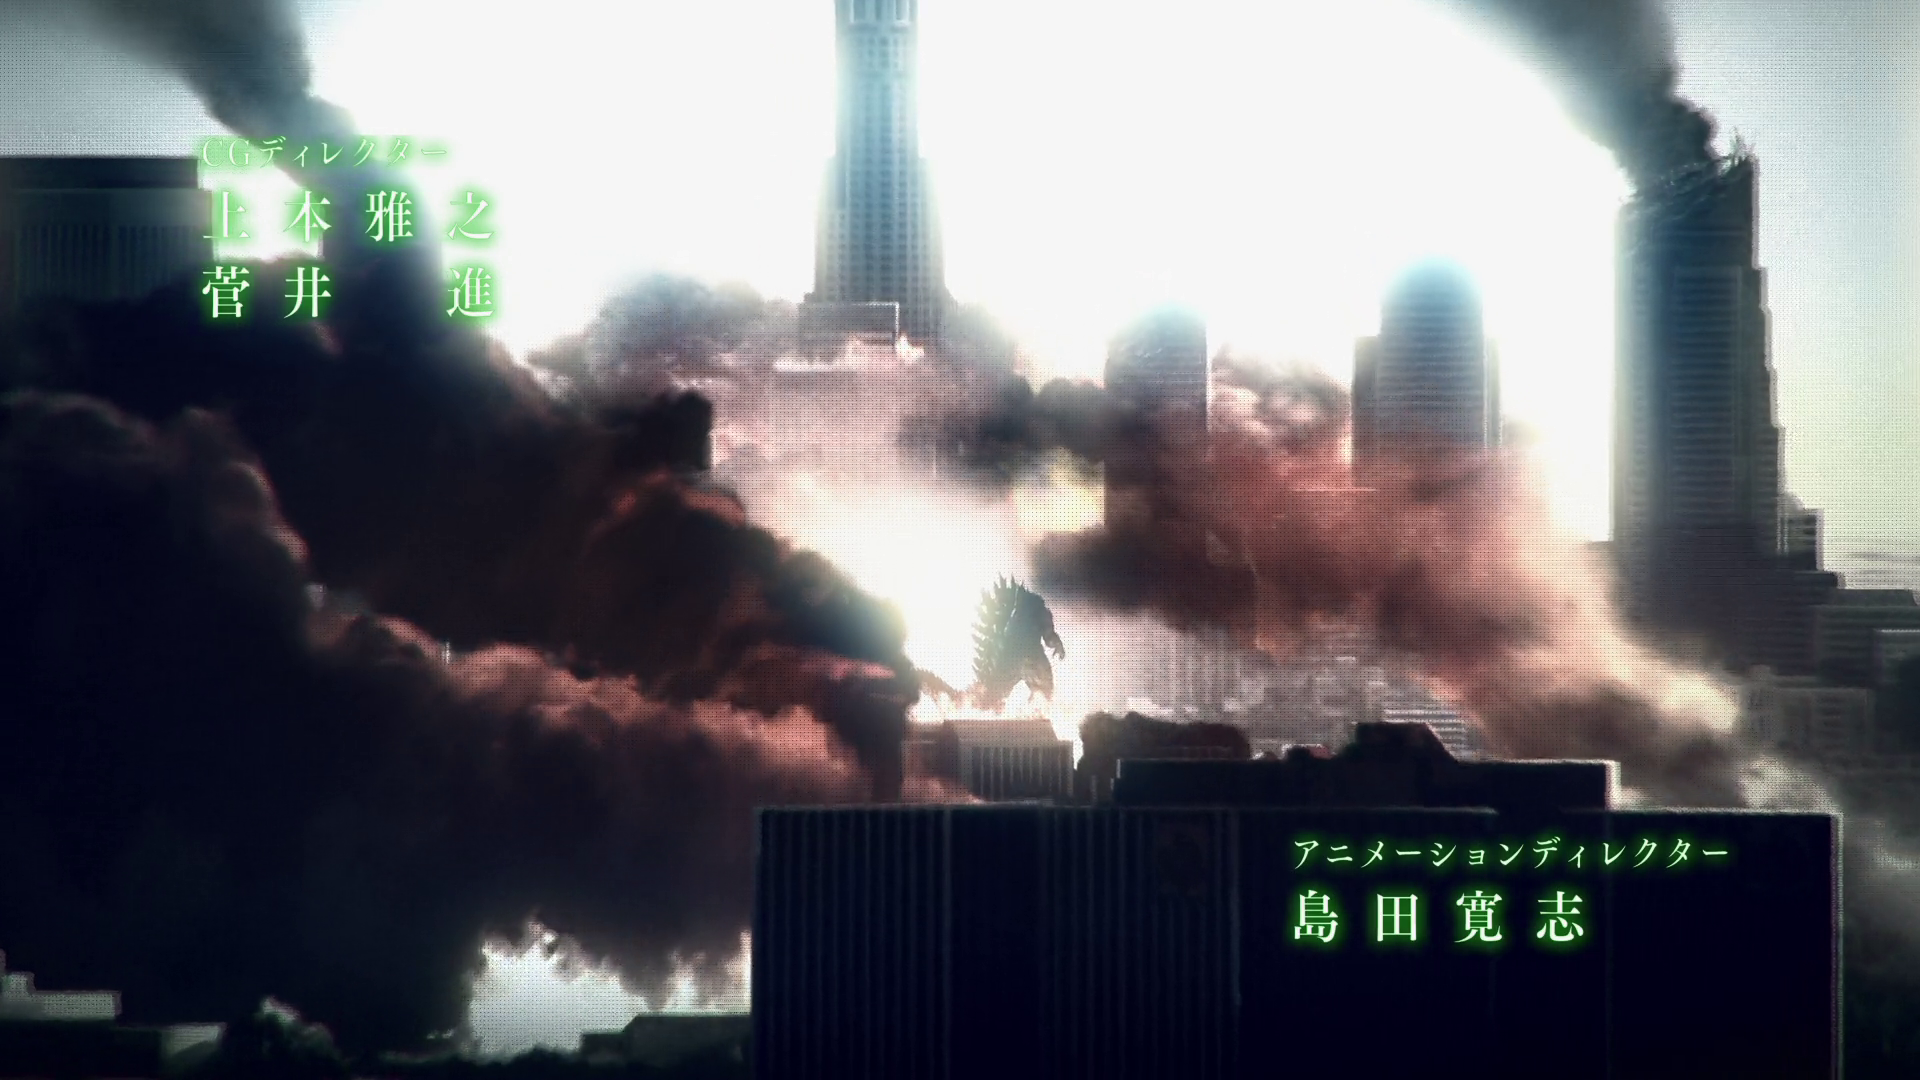 Movie The Godzilla Earth